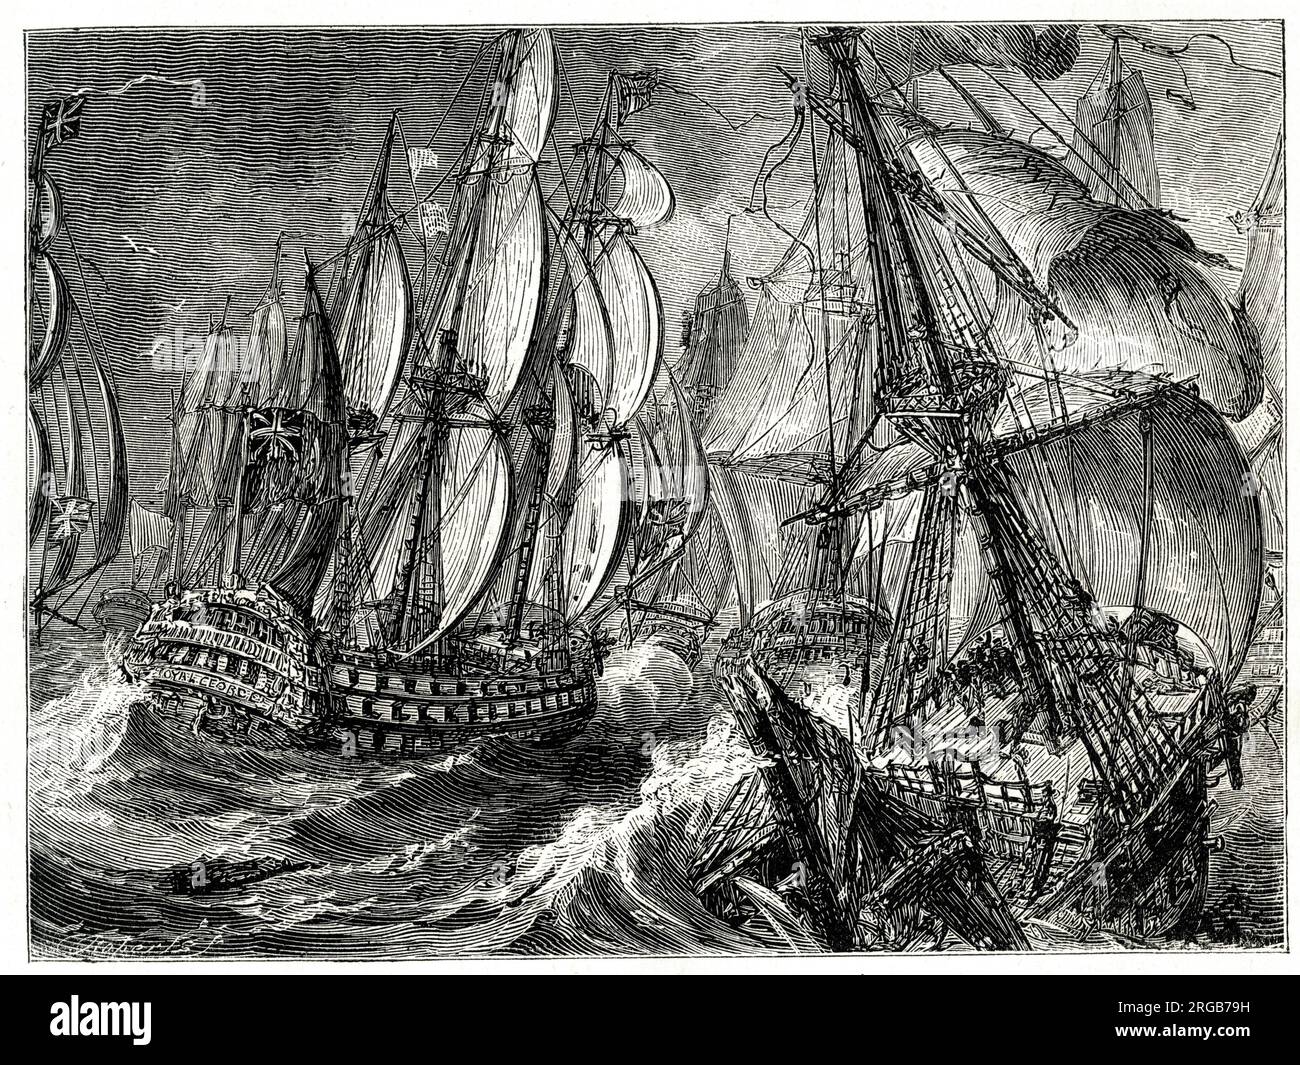 Bataille de la baie de Quiberon (bataille des Cardineaux), près de Saint-Nazaire, bataille navale opposant les Britanniques et les Français le 20 novembre 1759, pendant la guerre de sept ans (1756-1763). Banque D'Images